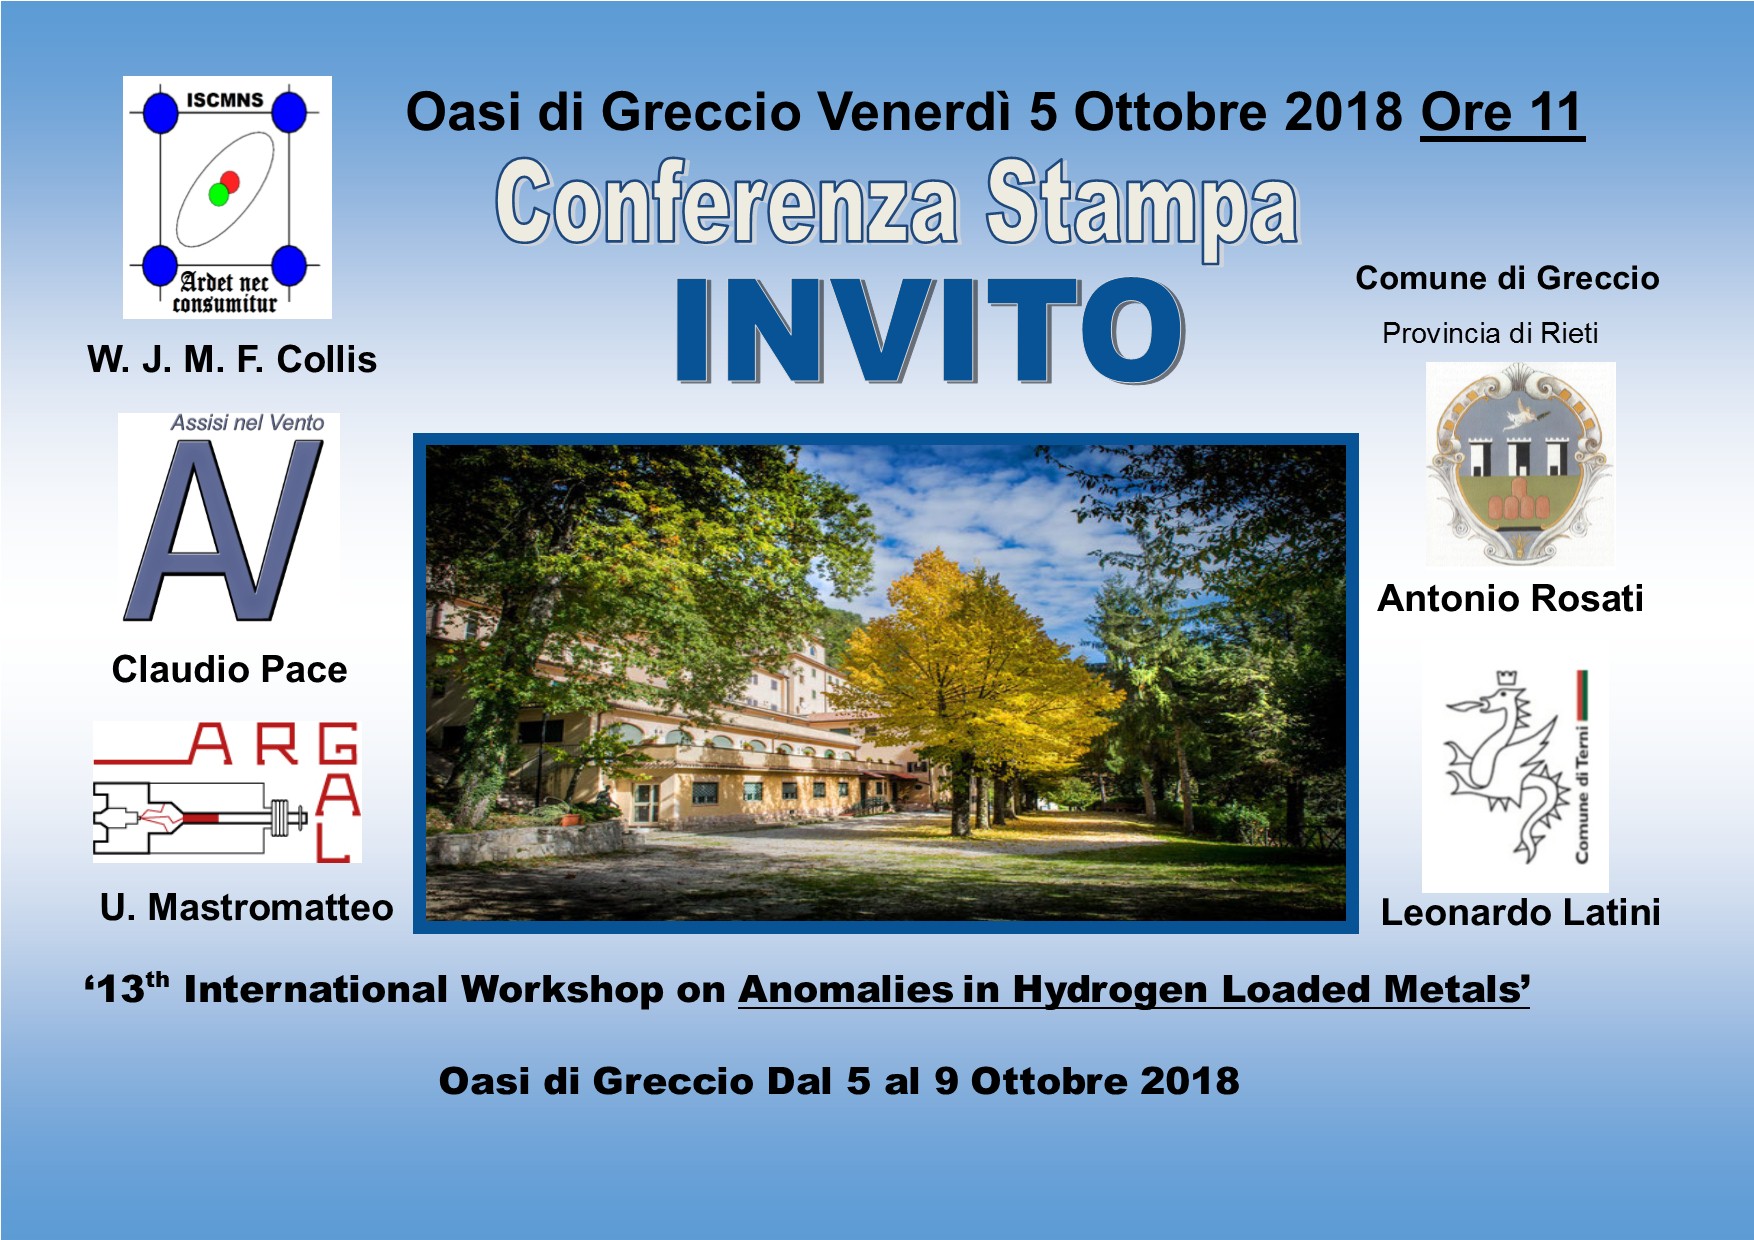 Invito-Conferenza-Stampa-Apertura-workshop-oasi-di-Greccio-5-Ott-2018-ore-11.jpg